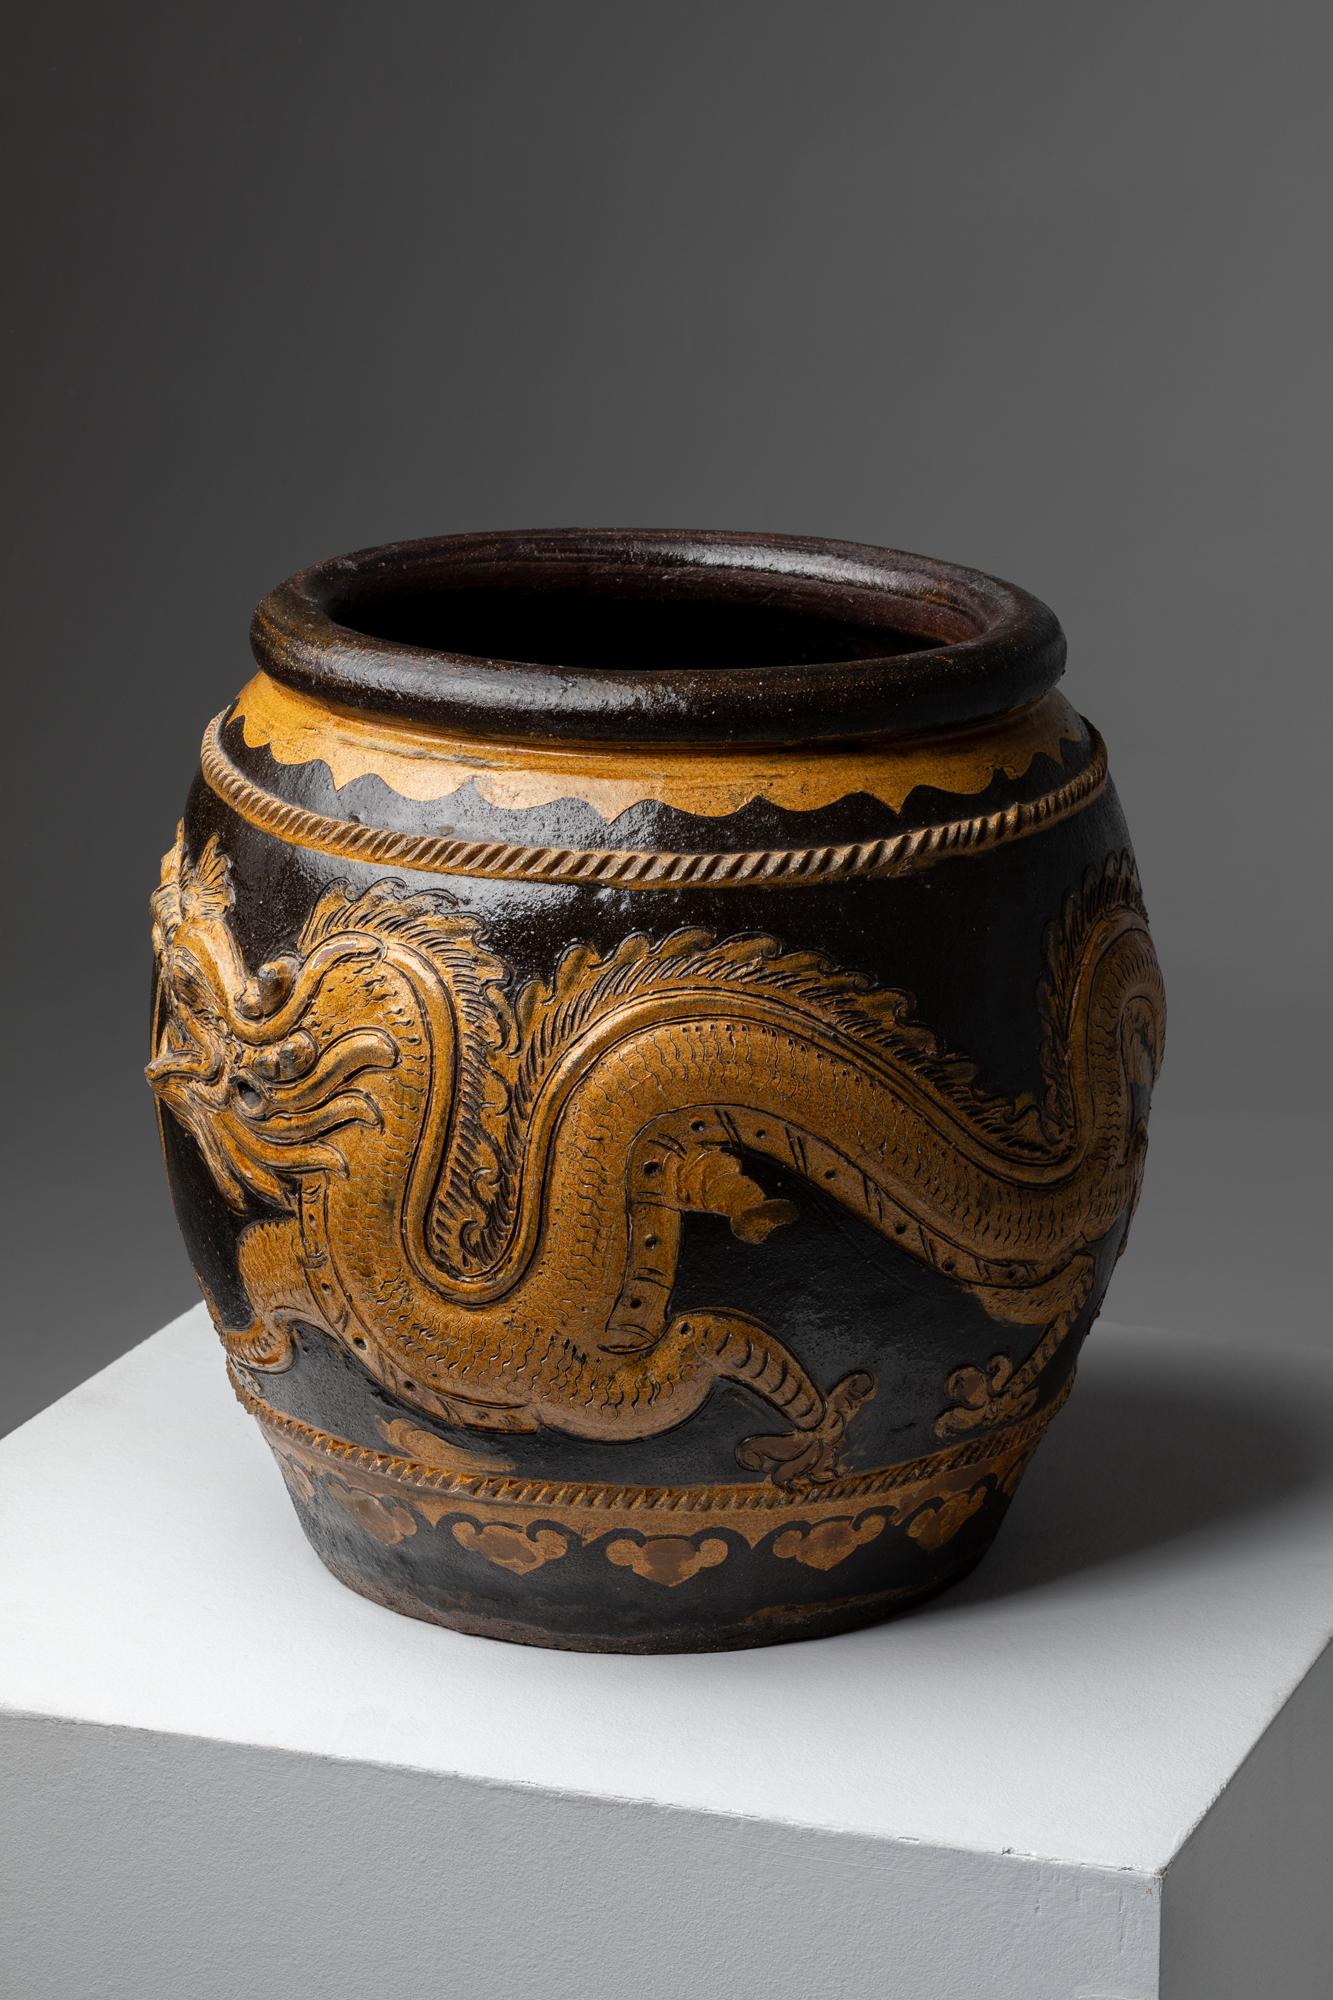 Diese prächtige große Steinzeugvase aus China stammt aus der Qing-Dynastie, genauer gesagt aus dem 19. Jahrhundert. Sie ist ein Beispiel für exquisite Handwerkskunst und künstlerischen Ausdruck. Die Vase ist 40x36 cm groß und zeichnet sich durch